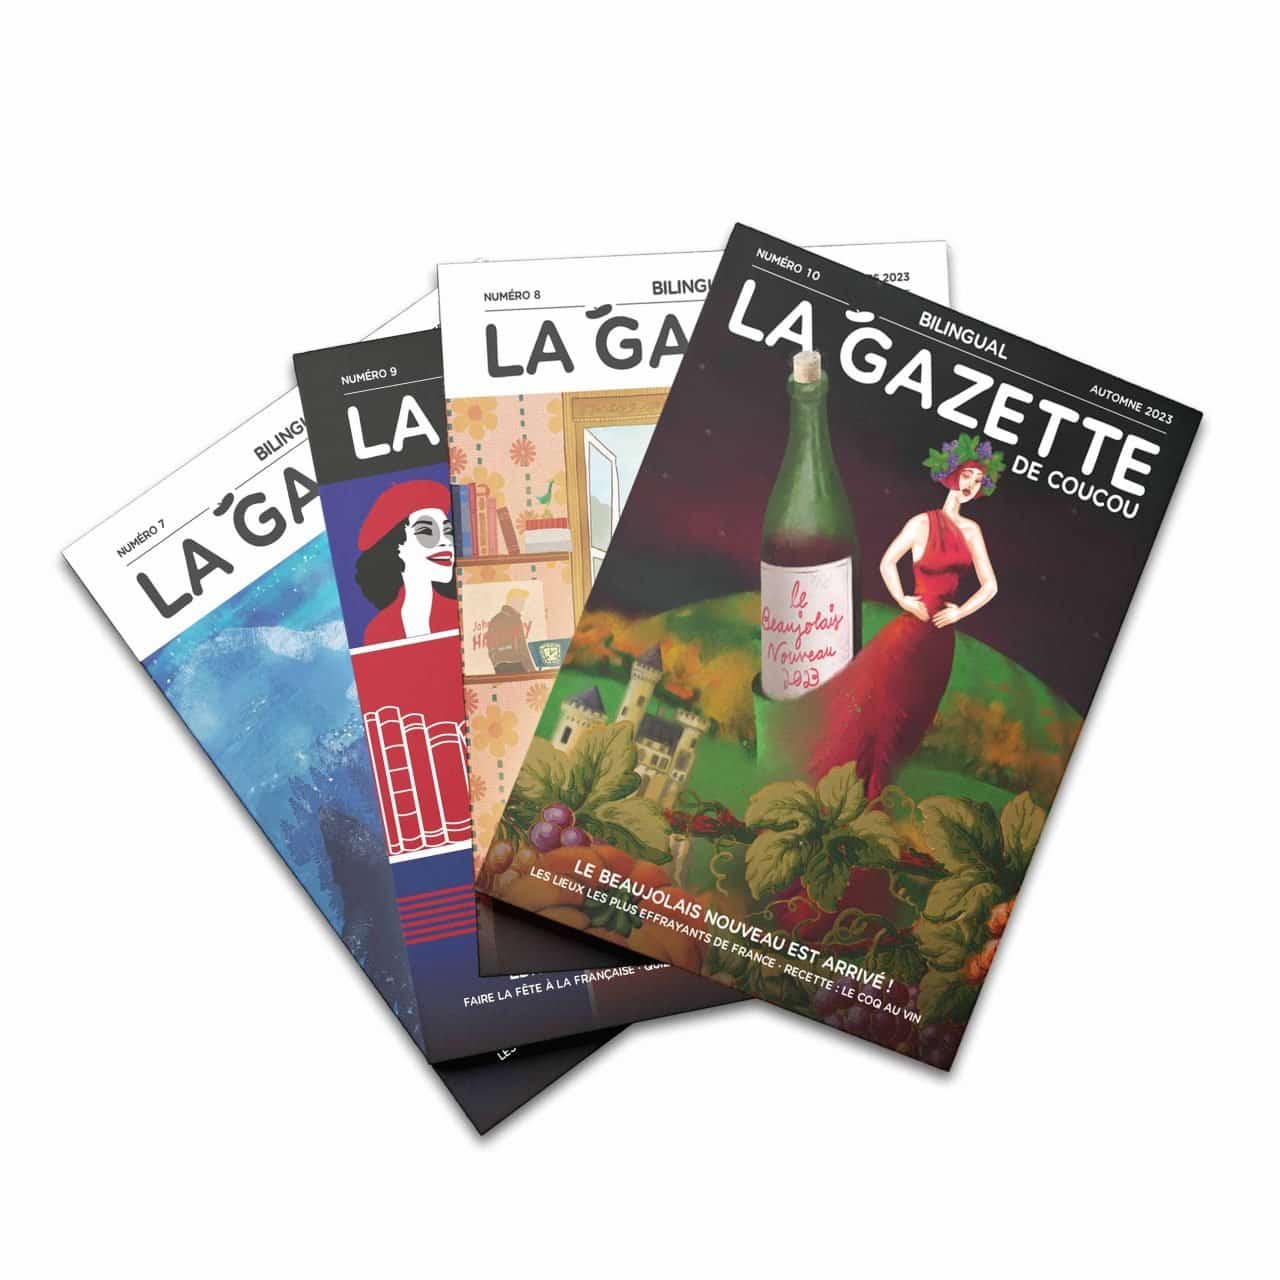 La Gazette Subscription